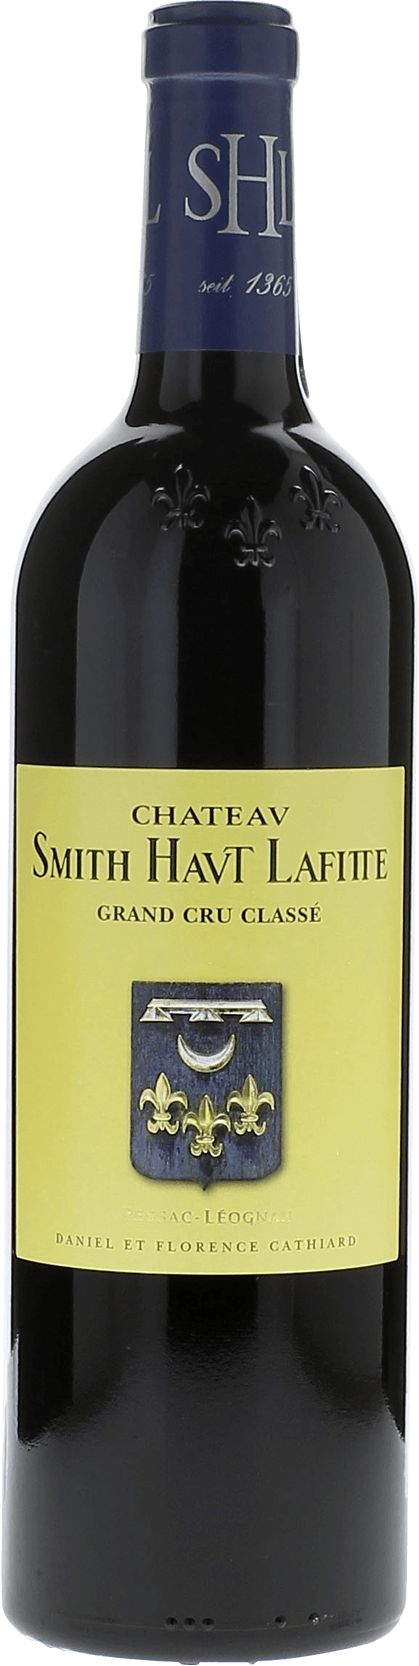 Smith haut lafitte 1997 Grand Cru Class Graves, Bordeaux rouge